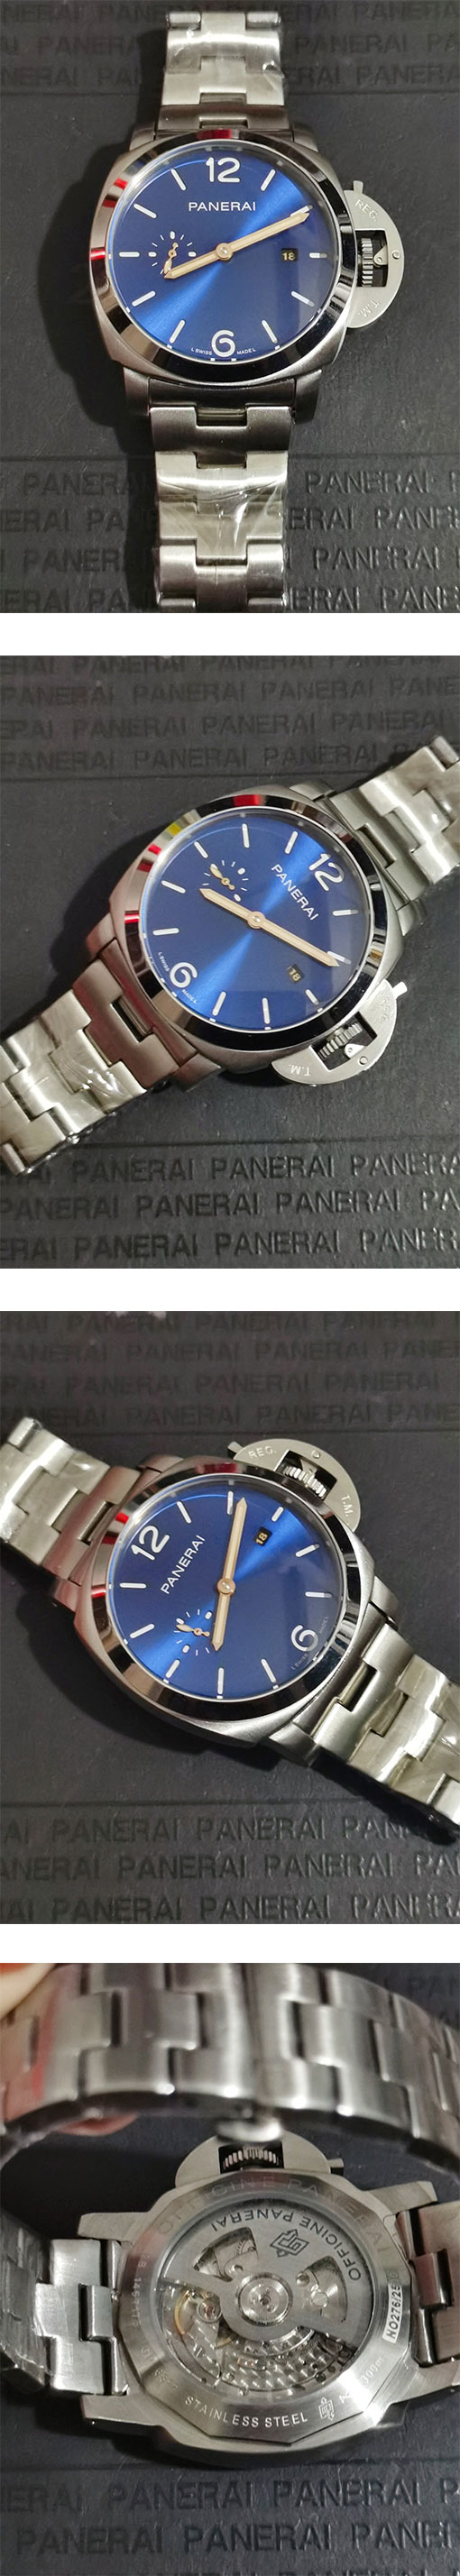 レプリカ時計パネライ PANERAI ルミノール ドゥエ 44mm PAM01124 出来栄えがきれい